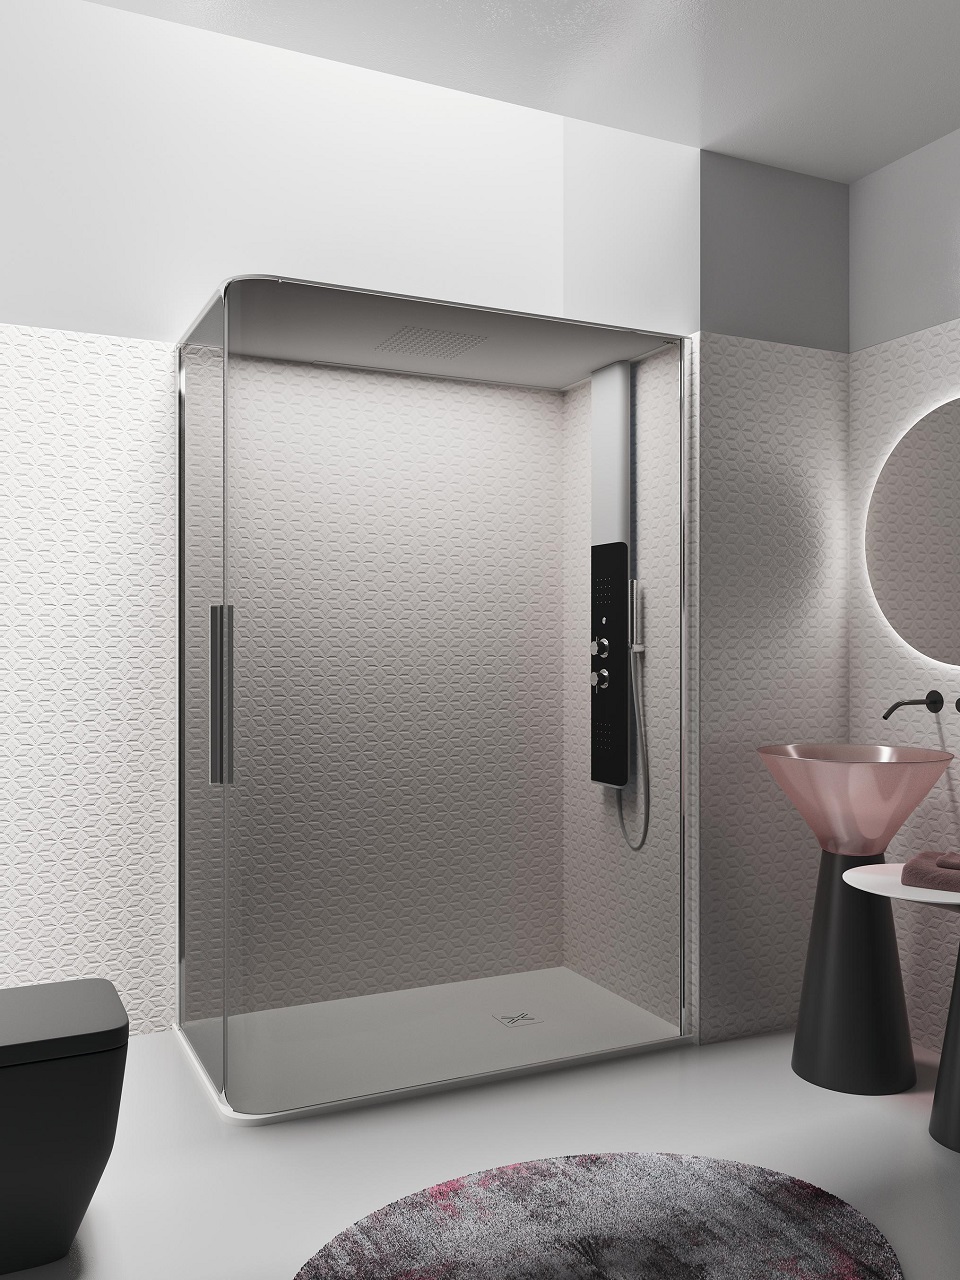 Bobox, l'innovativa cabina doccia componibile che rivoluziona il benessere in bagno B 4 red